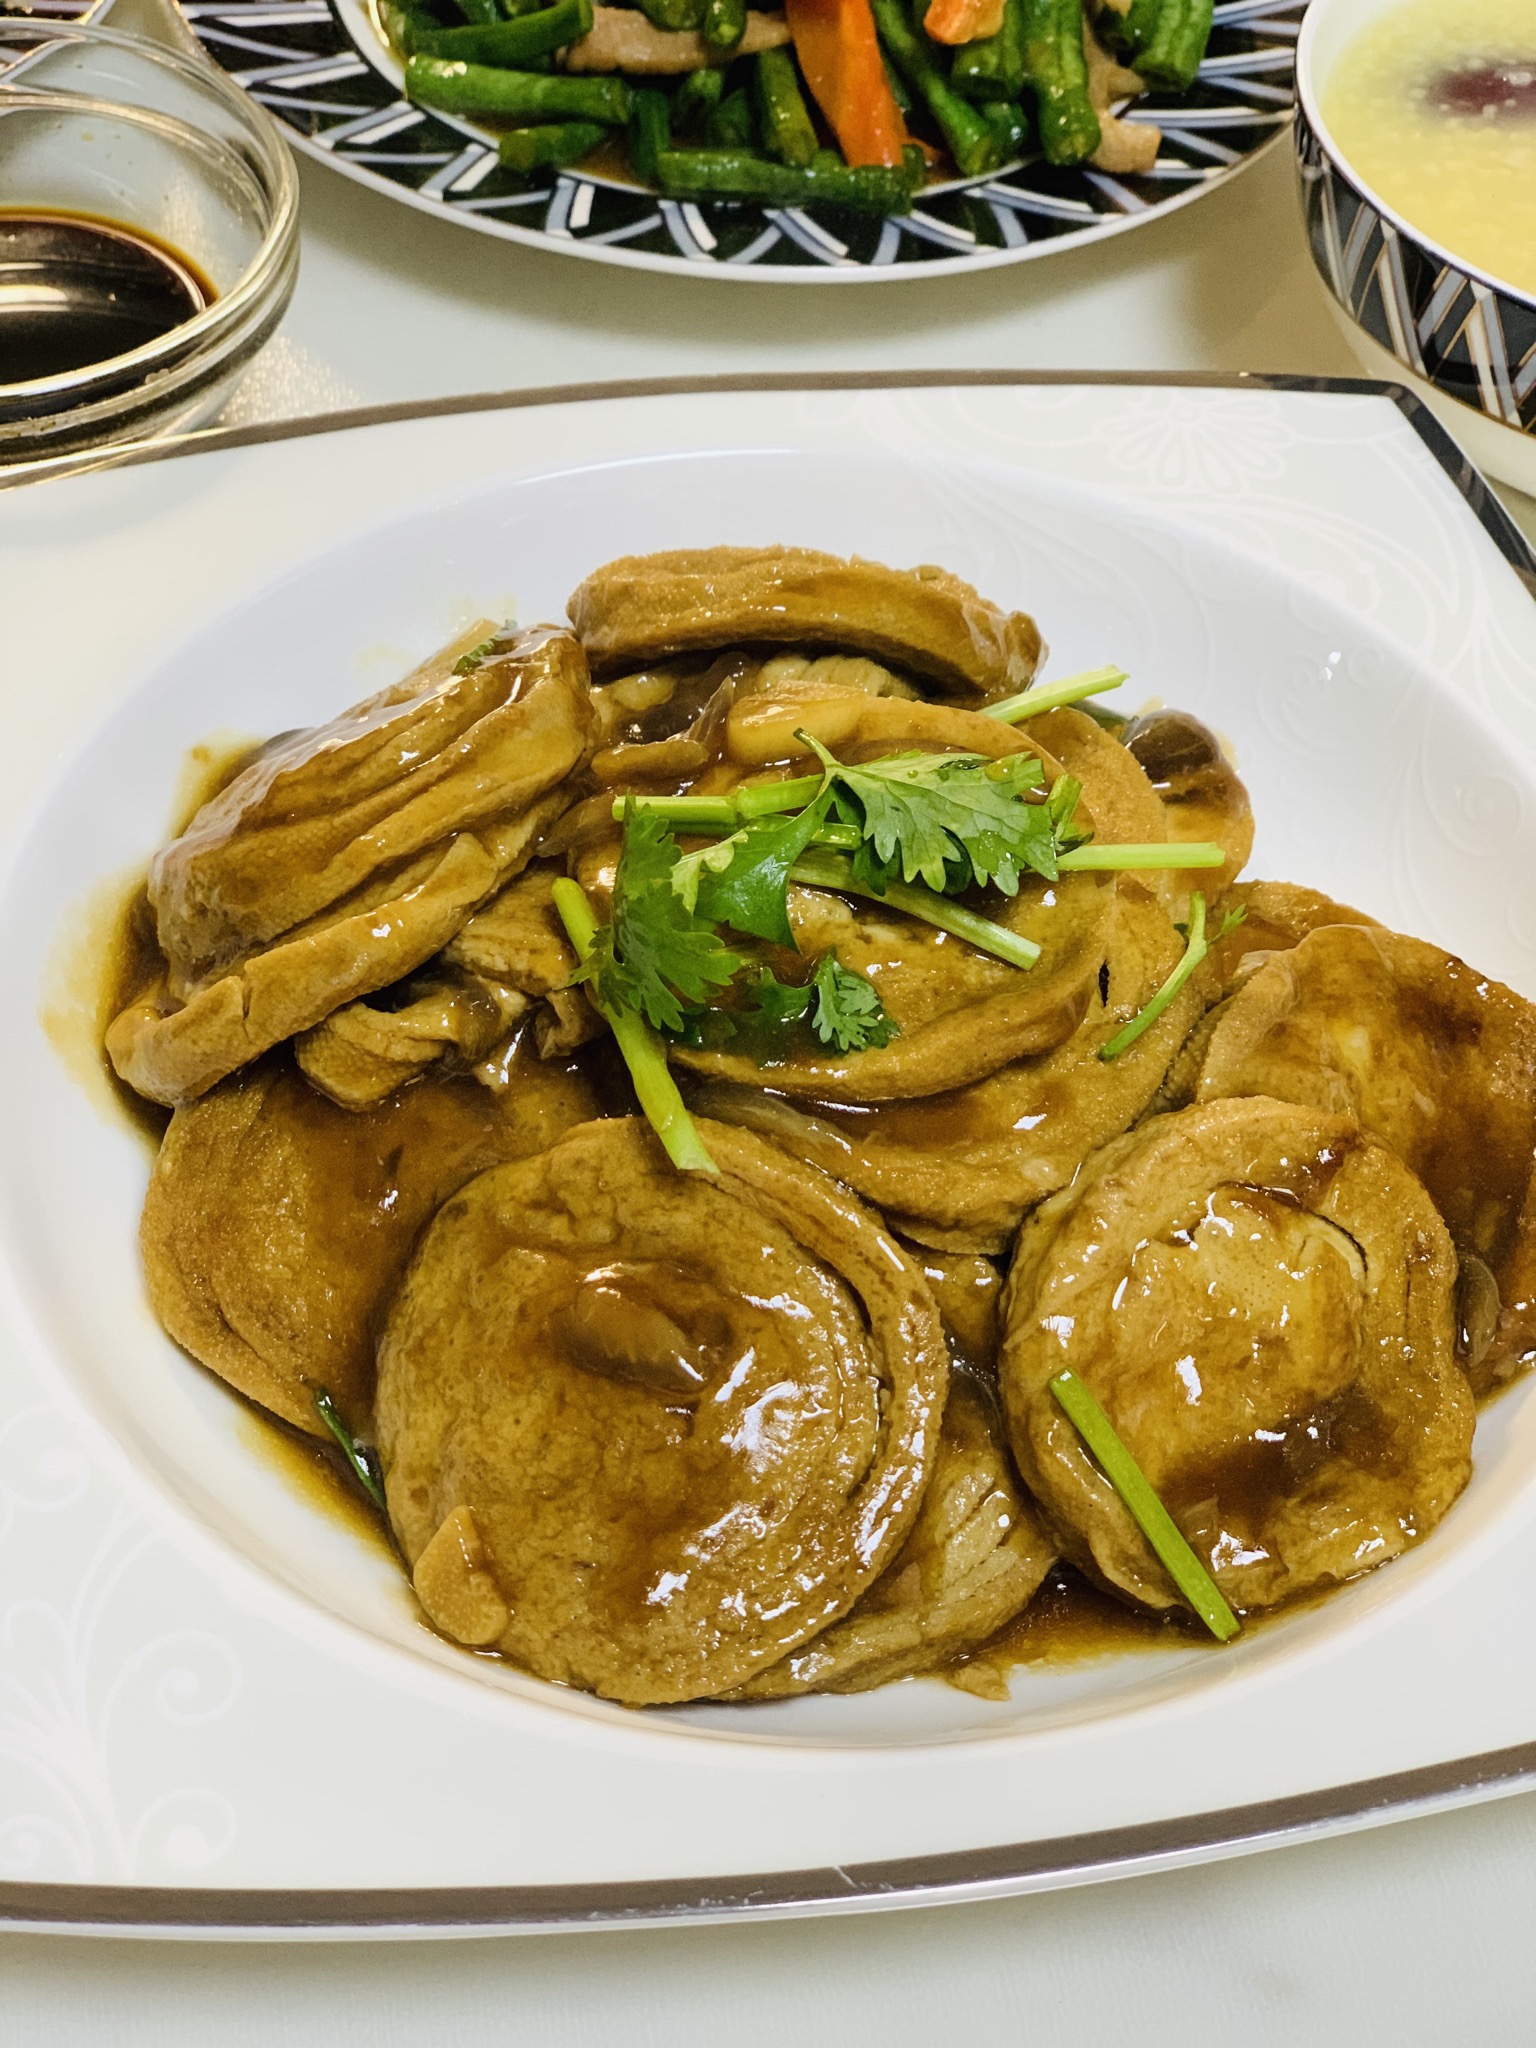 砂锅鸡煲,砂锅鸡煲的家常做法 - 美食杰砂锅鸡煲做法大全